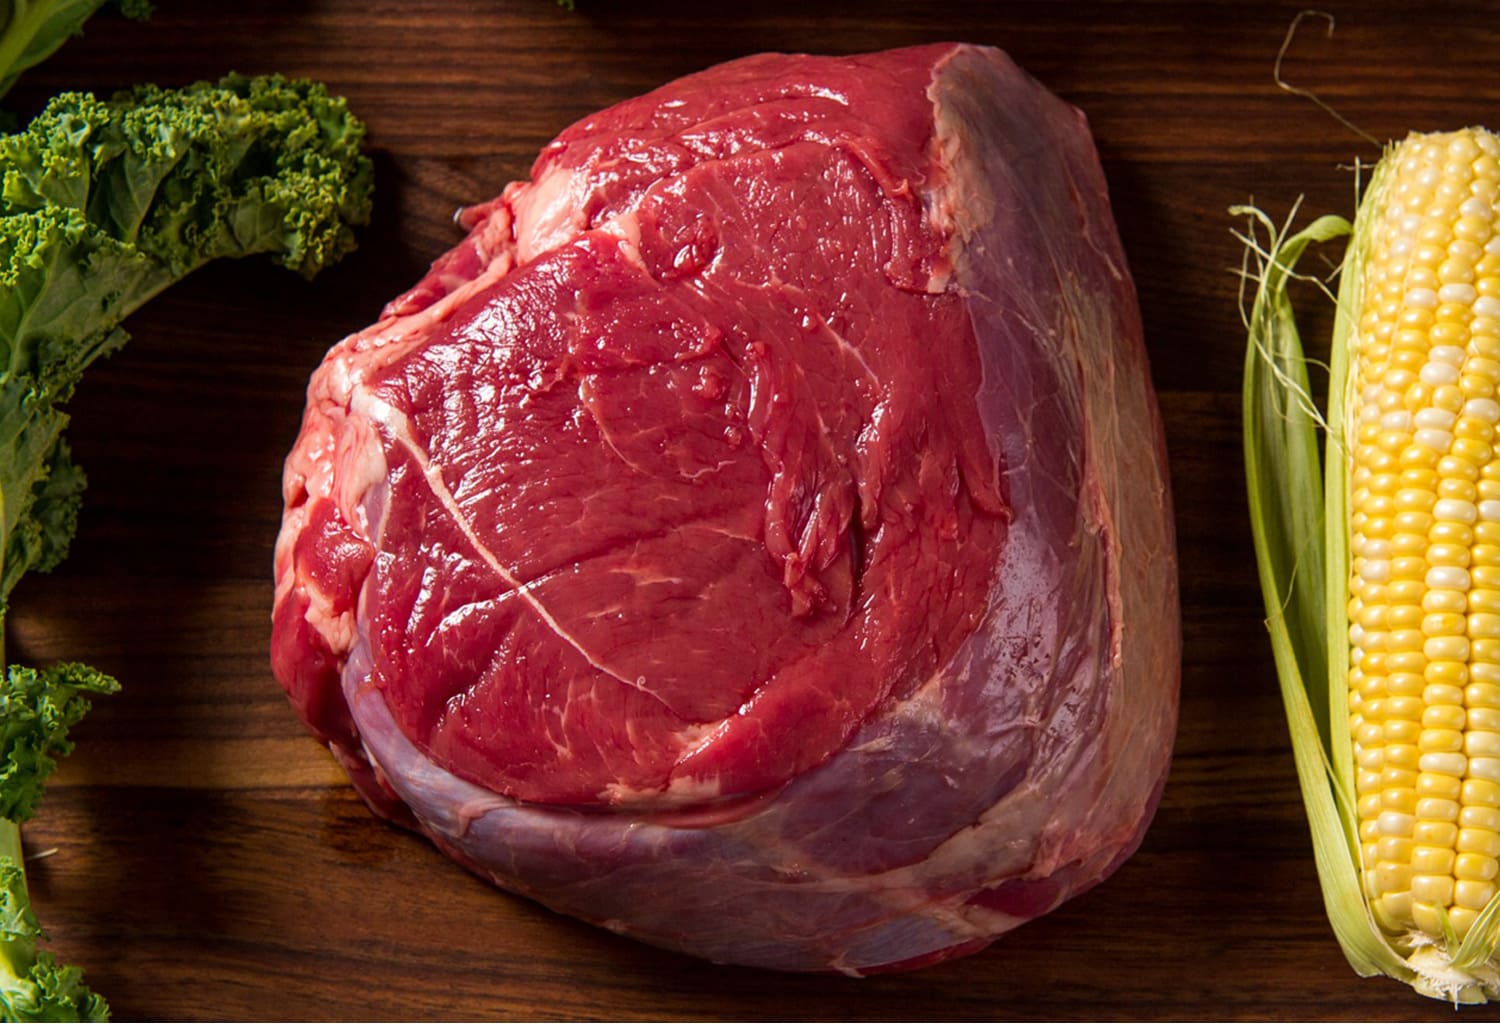 River Watch Beef – Premium Grass-Fed Sirloin Roast